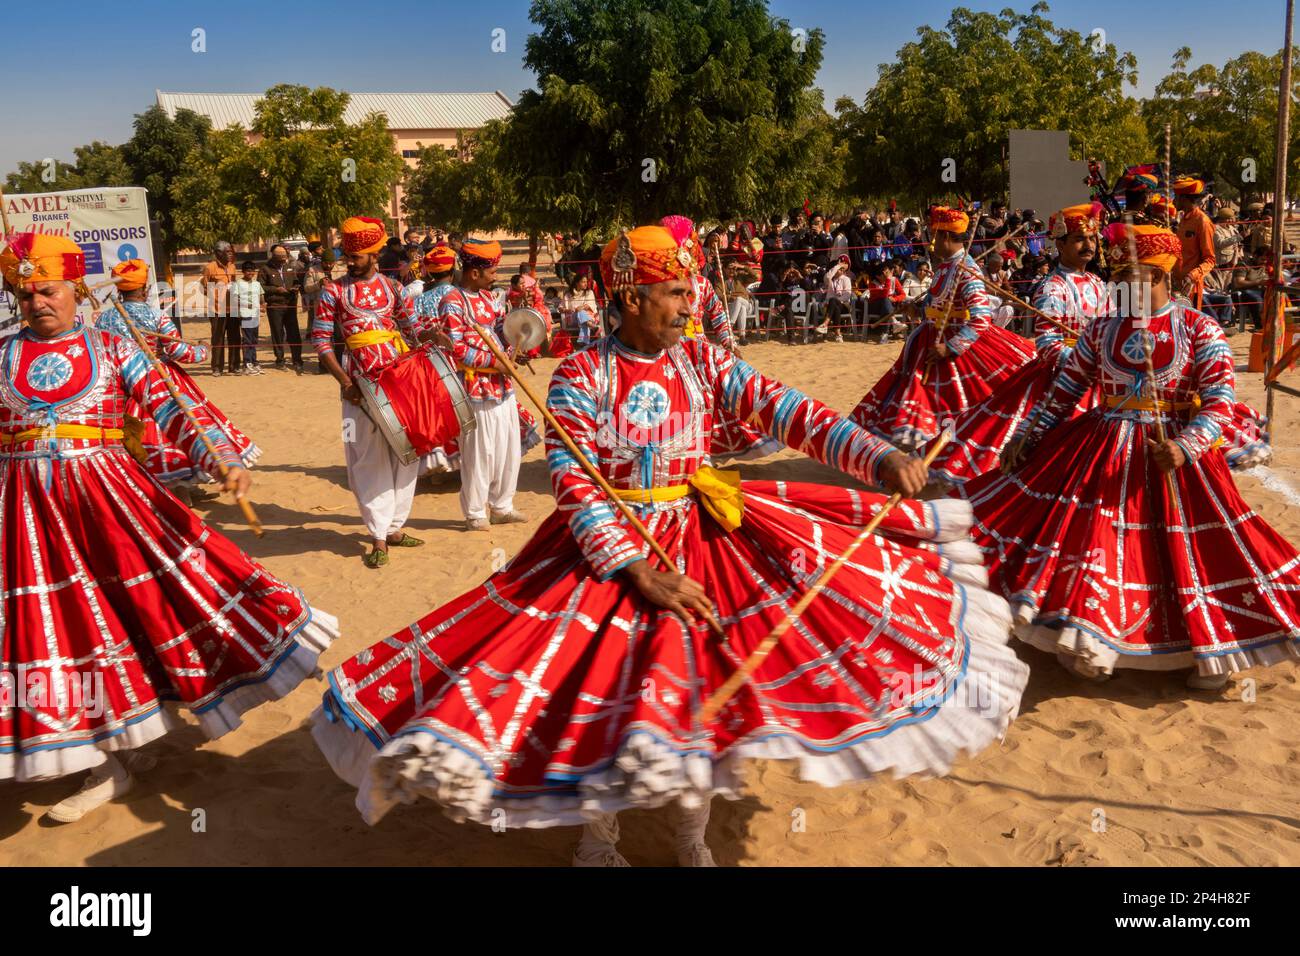 Indien, Rajasthan, Bikaner, National Camel Research Centre, Kamelfestival, traditionelle Rajasthani Folk Tänzer Stockfoto